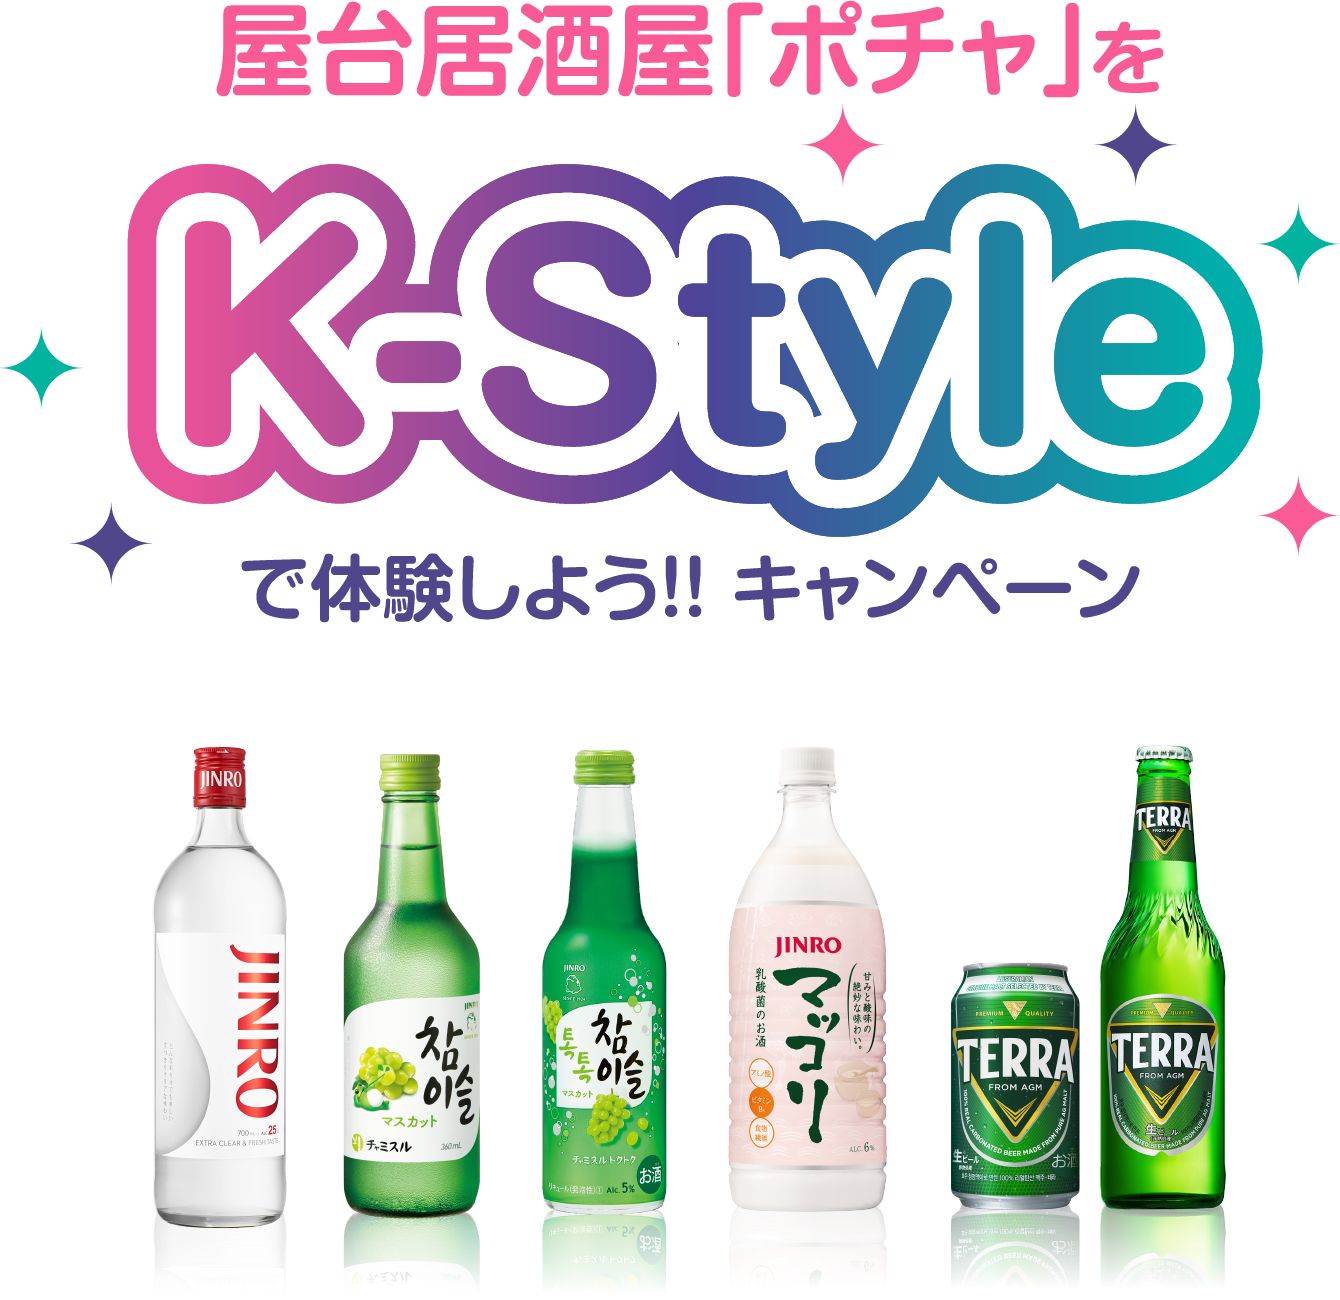 屋台居酒屋「ポチャ」を K-Style で体験しよう!! キャンペーン